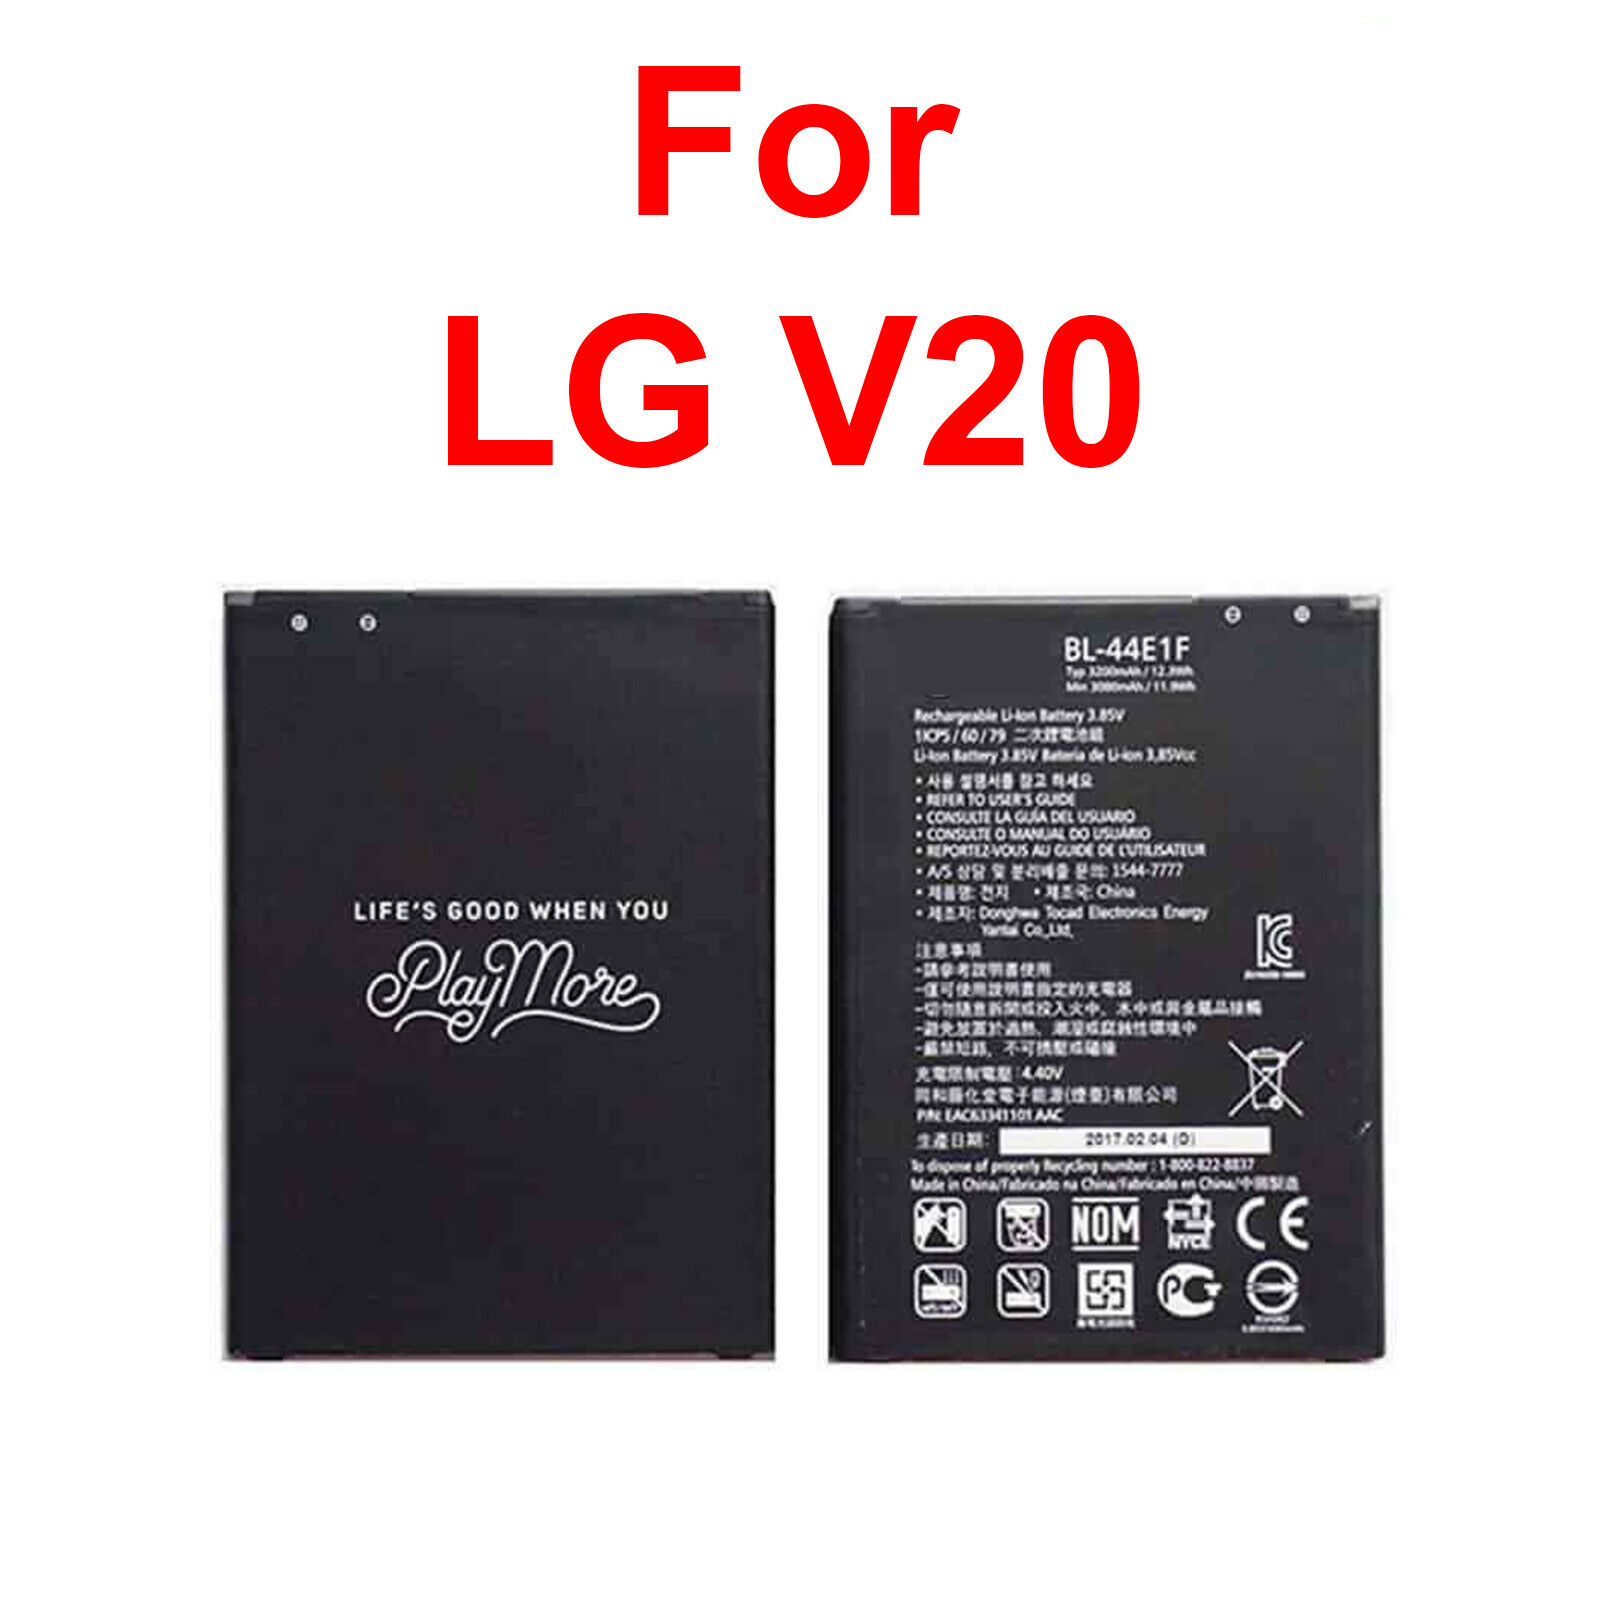 New Battery Lg Bl-44e1f For Lg V20 Stylo 3 H910 H918 V995 Ls997 Replacement A+